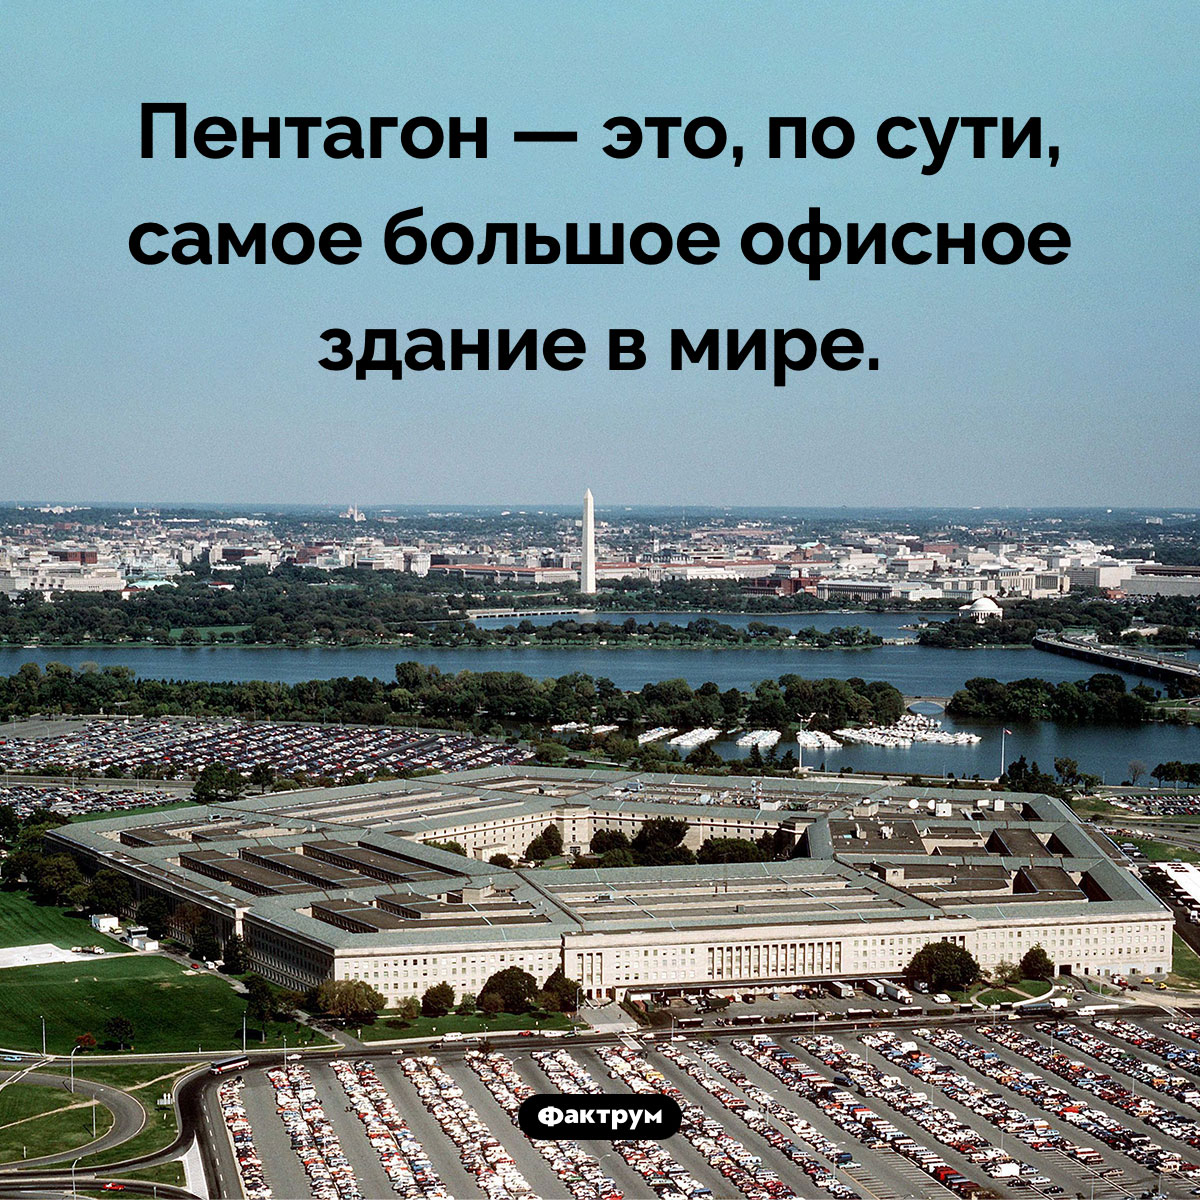 Что собой представляет Пентагон. Пентагон — это, по сути, самое большое офисное здание в мире.